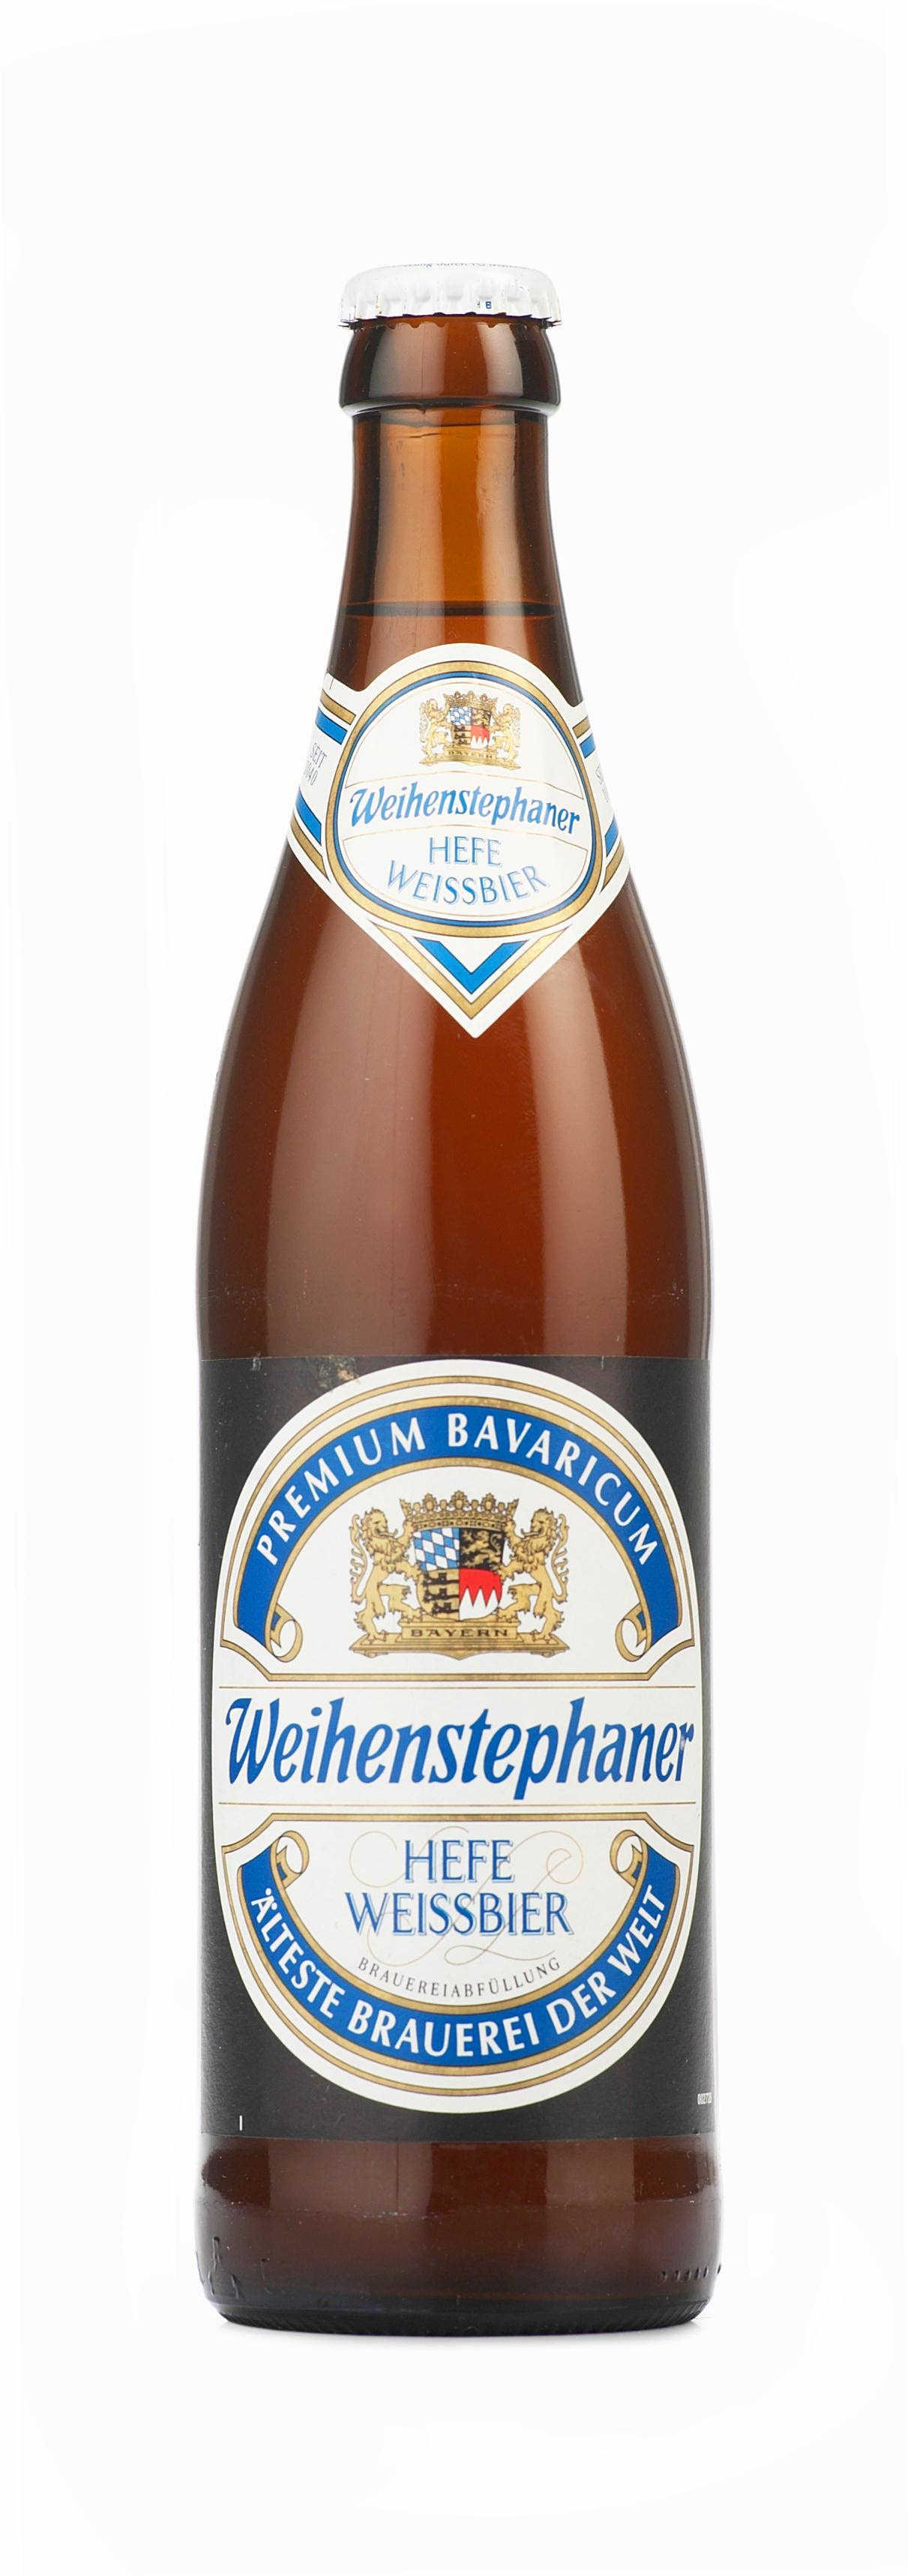 Пиво светлое Weihenstephaner Hefe-Waissbier нефильтрованное 5,4%, 500 мл., стекло